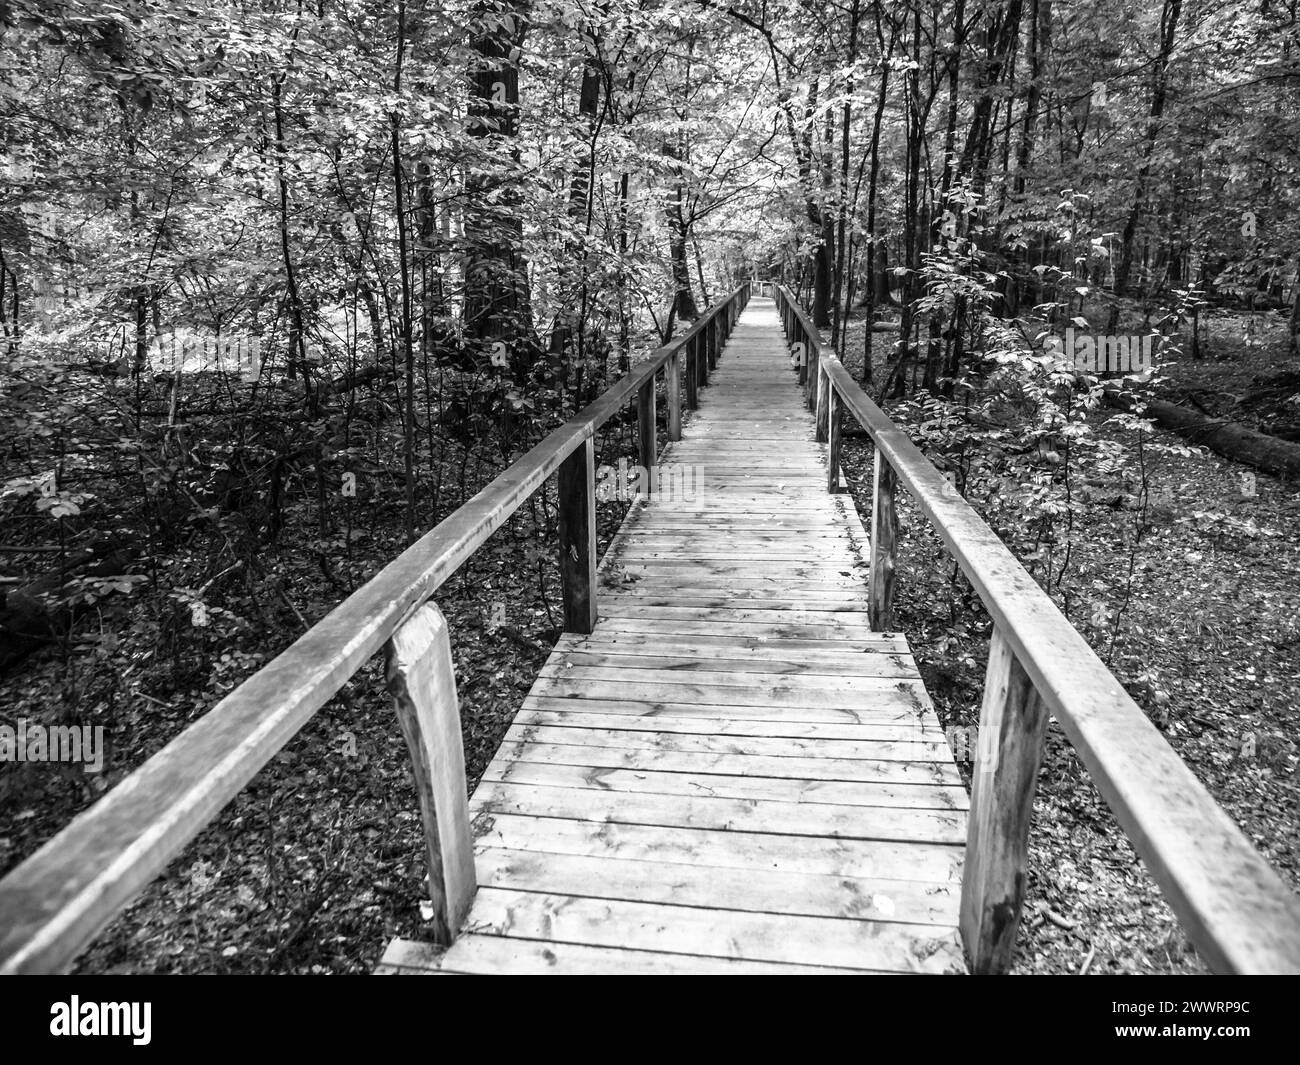 Sentiero in legno nella foresta primordiale di Bialowieza, Polonia. Immagine in bianco e nero. Foto Stock